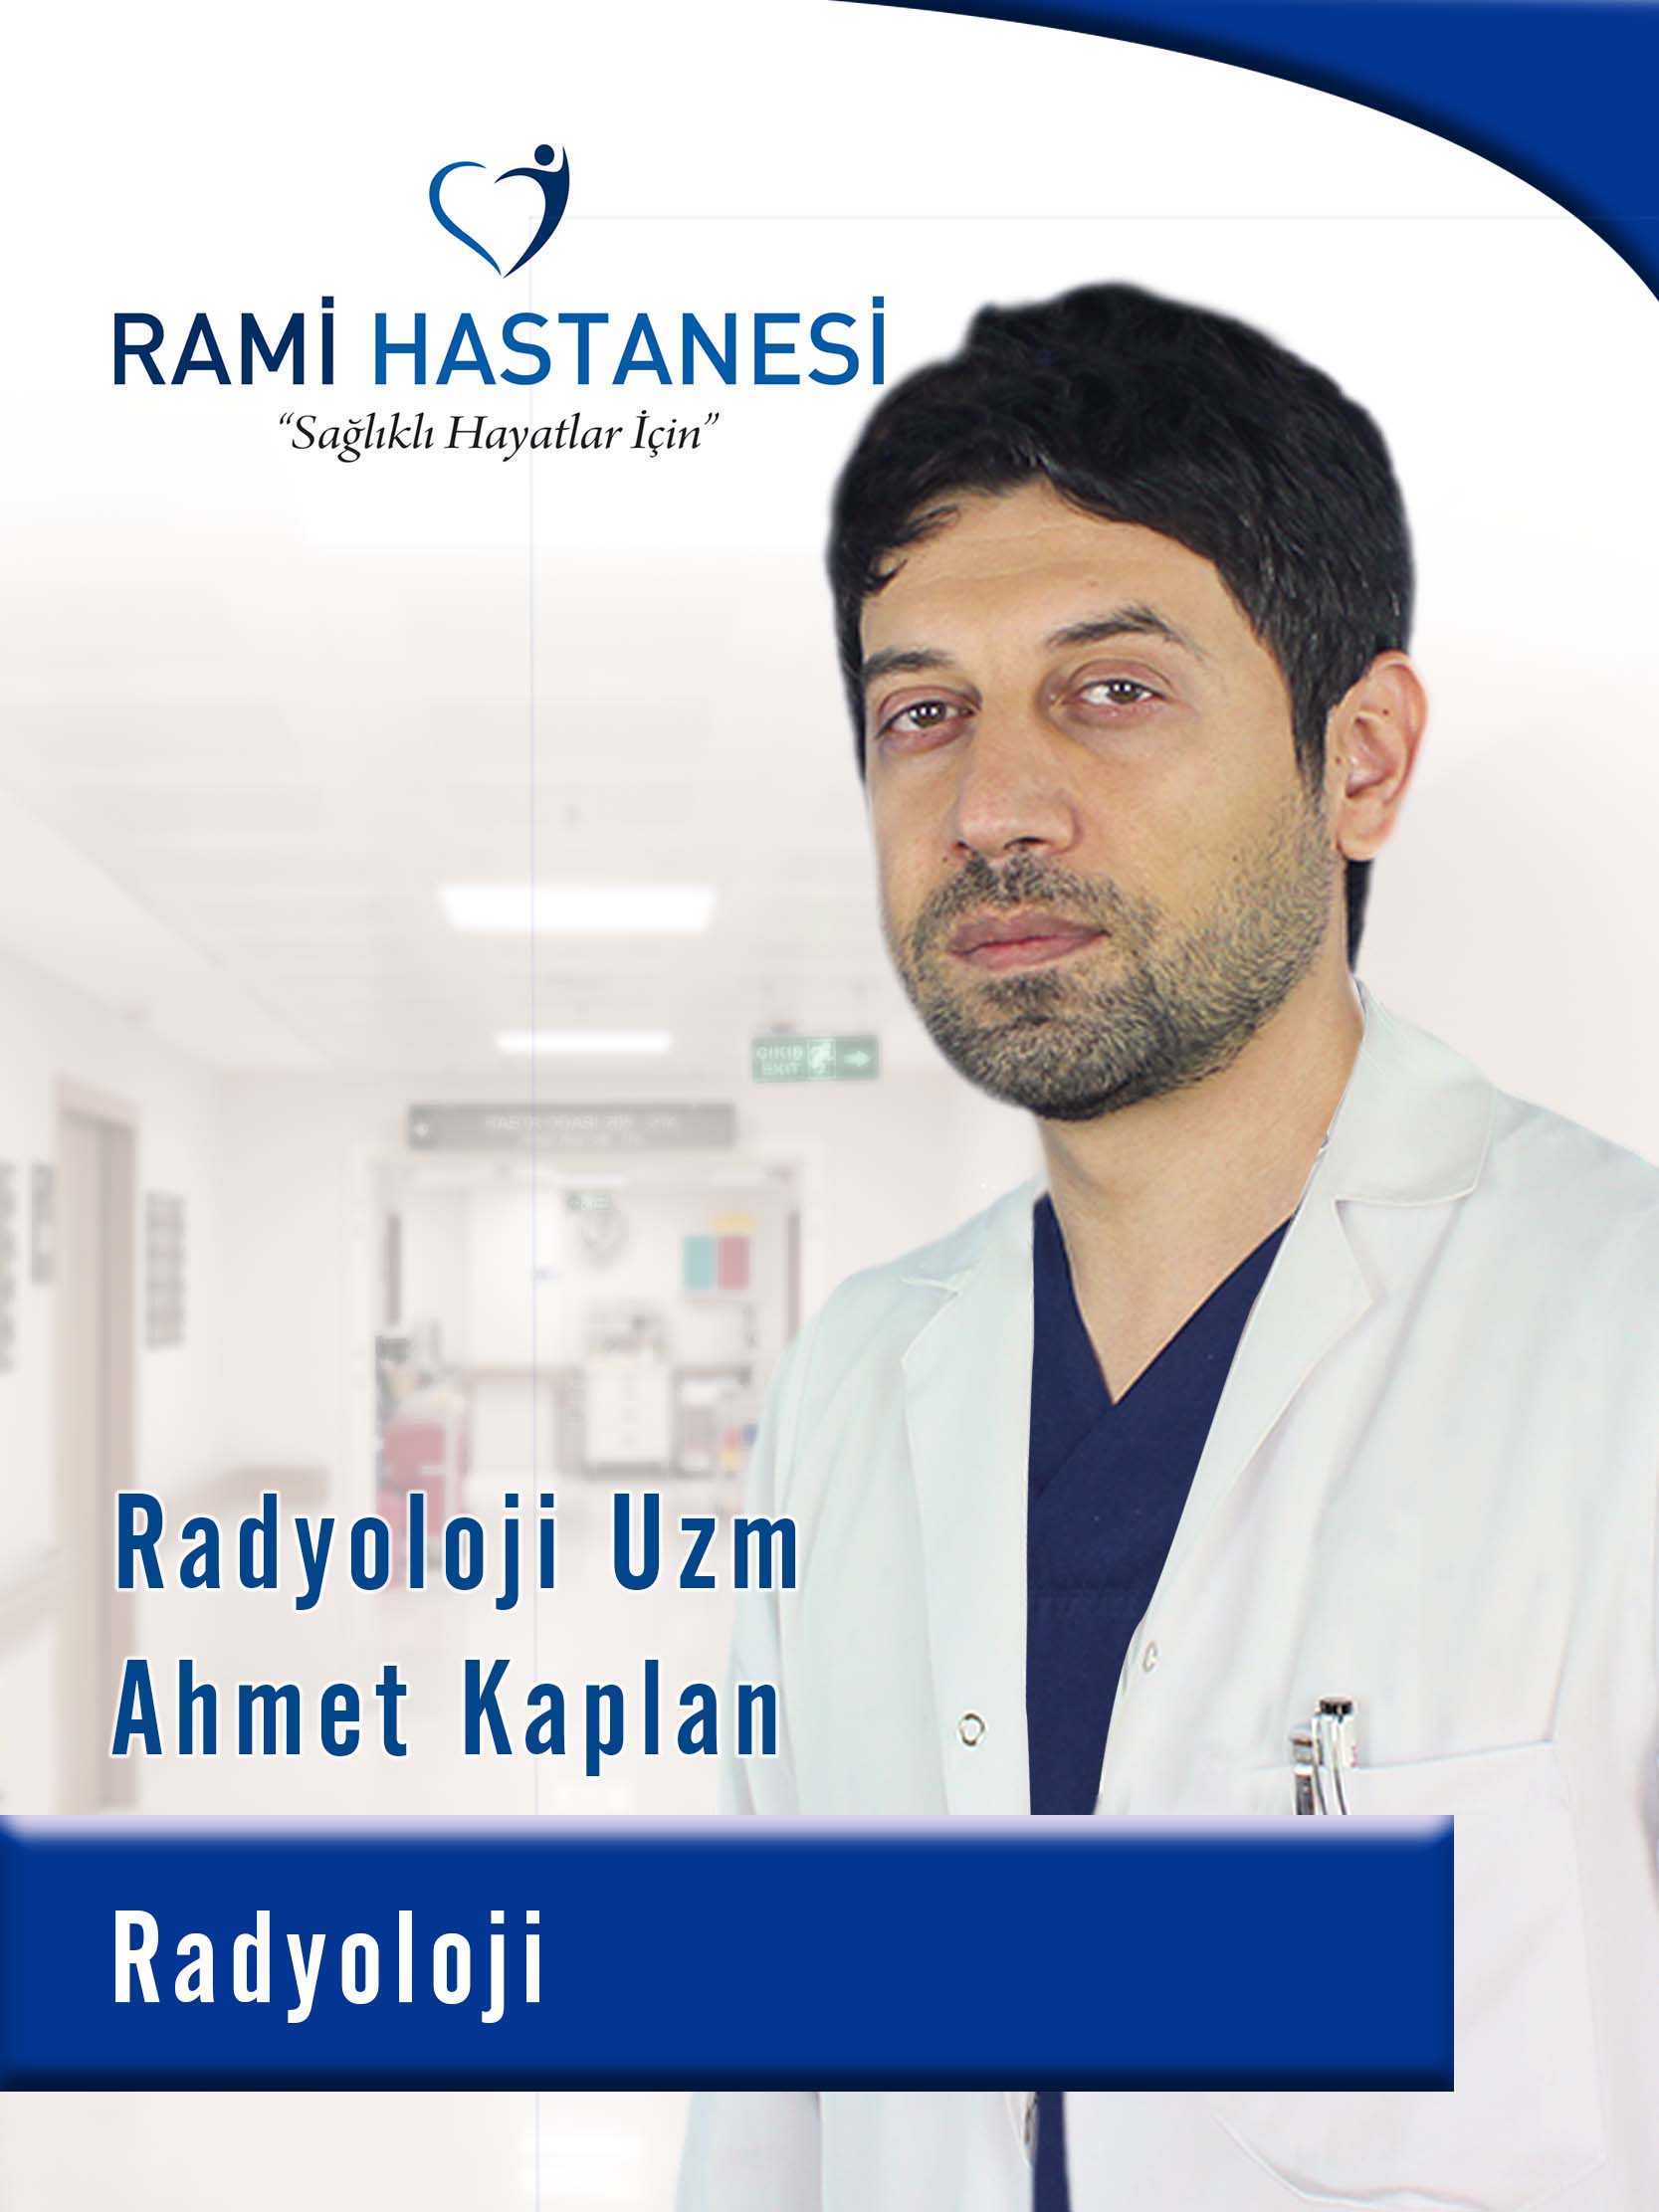 أخصائي أشعة Ahmet KAPLAN